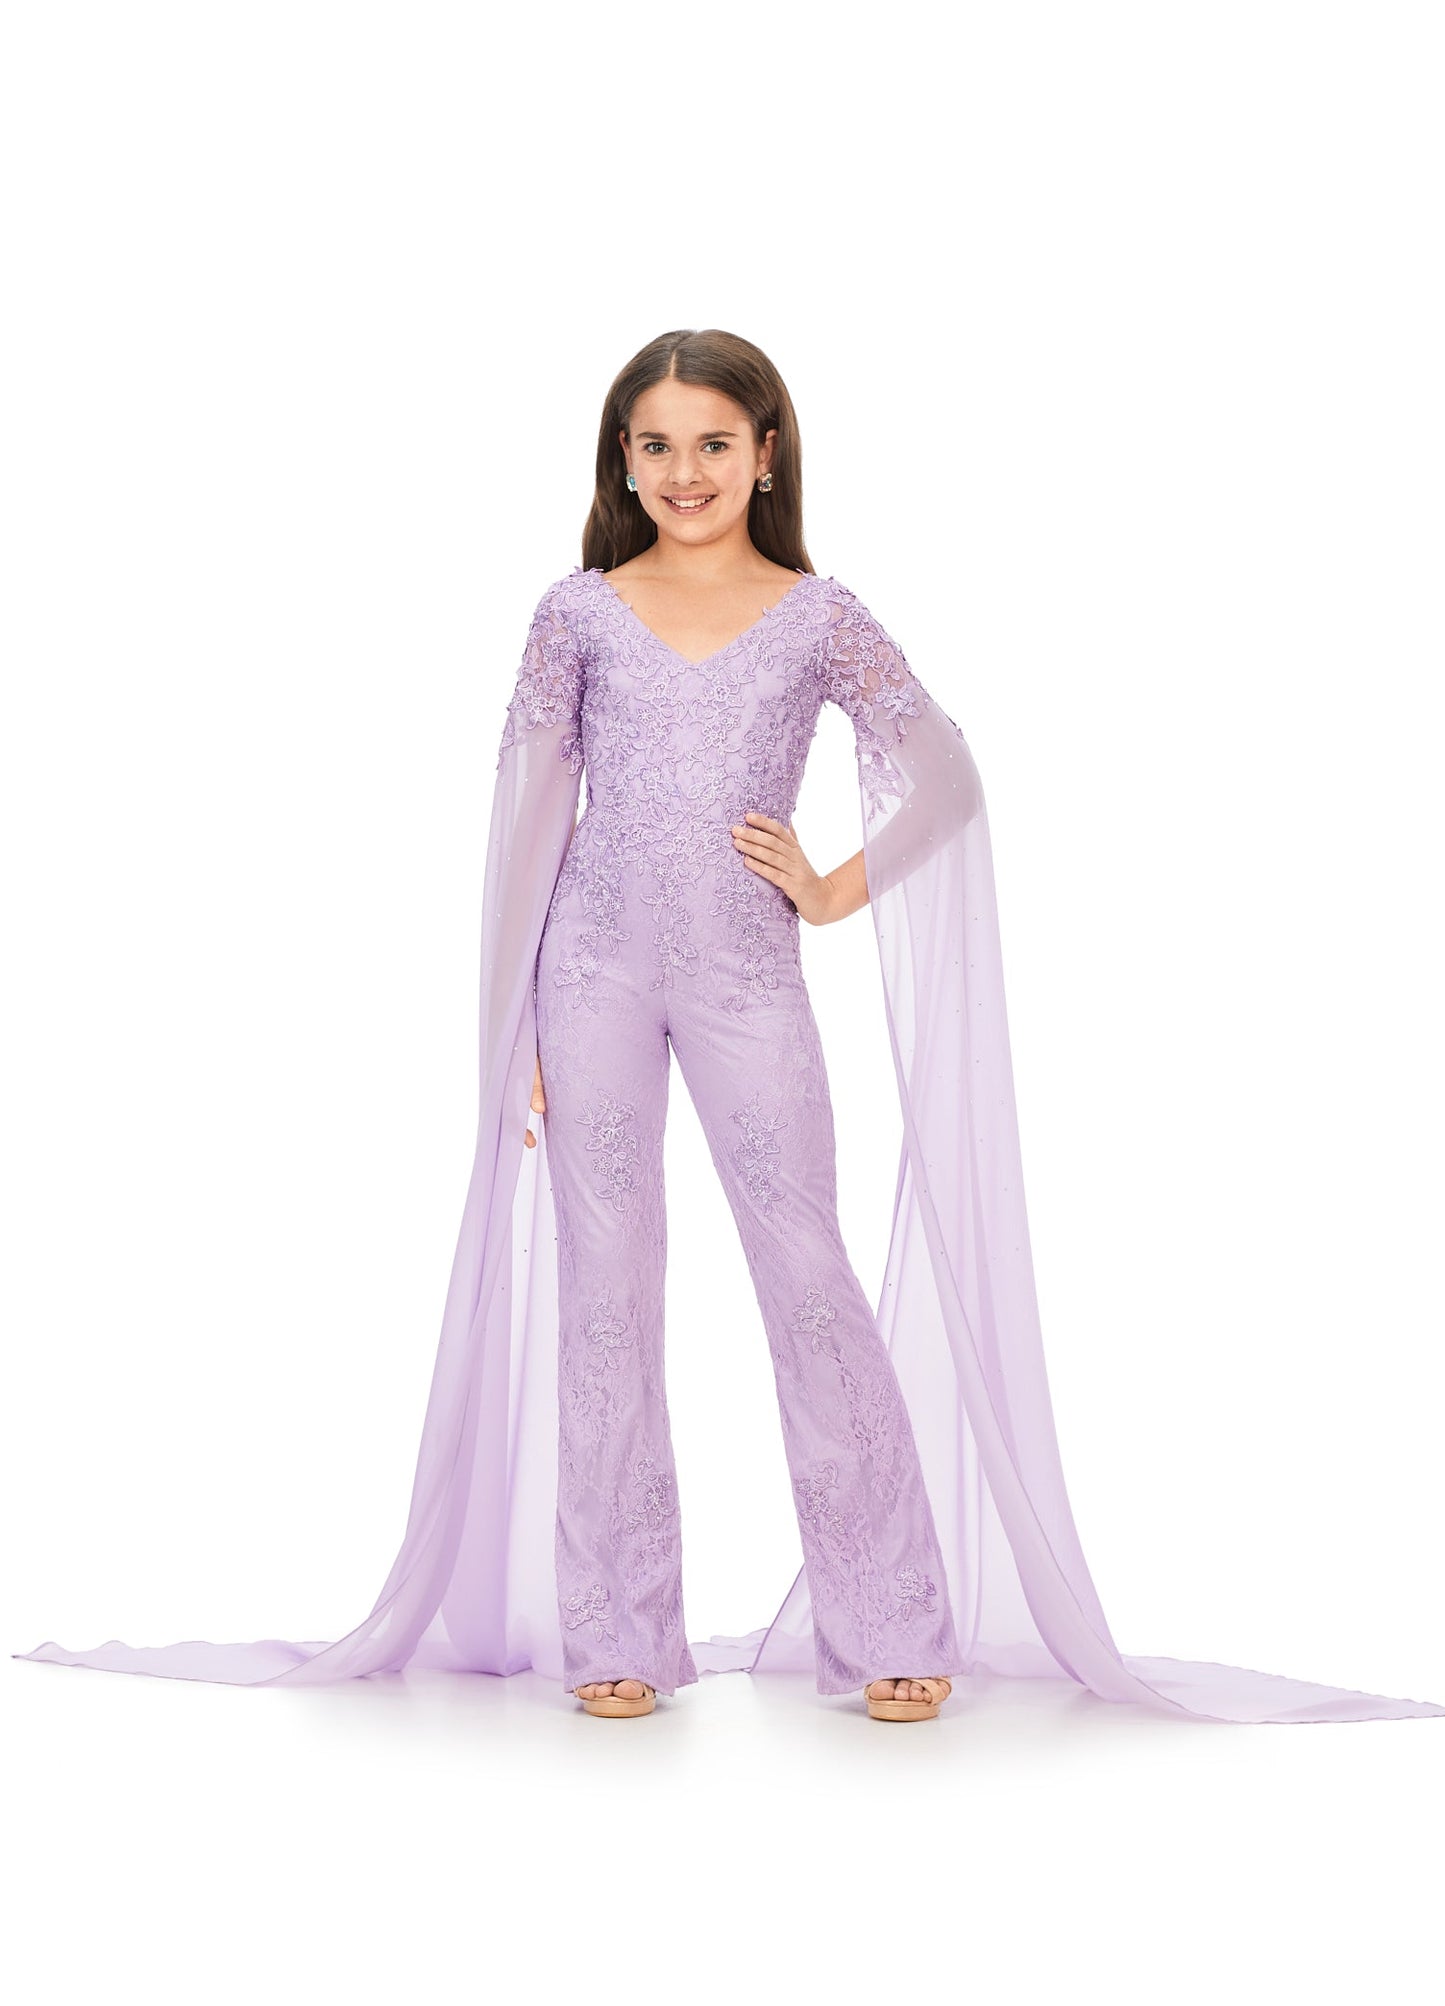 Ashley Lauren Kids 8162 Size 6, 10, 14 Lilac Lace Girls Jumpsuit